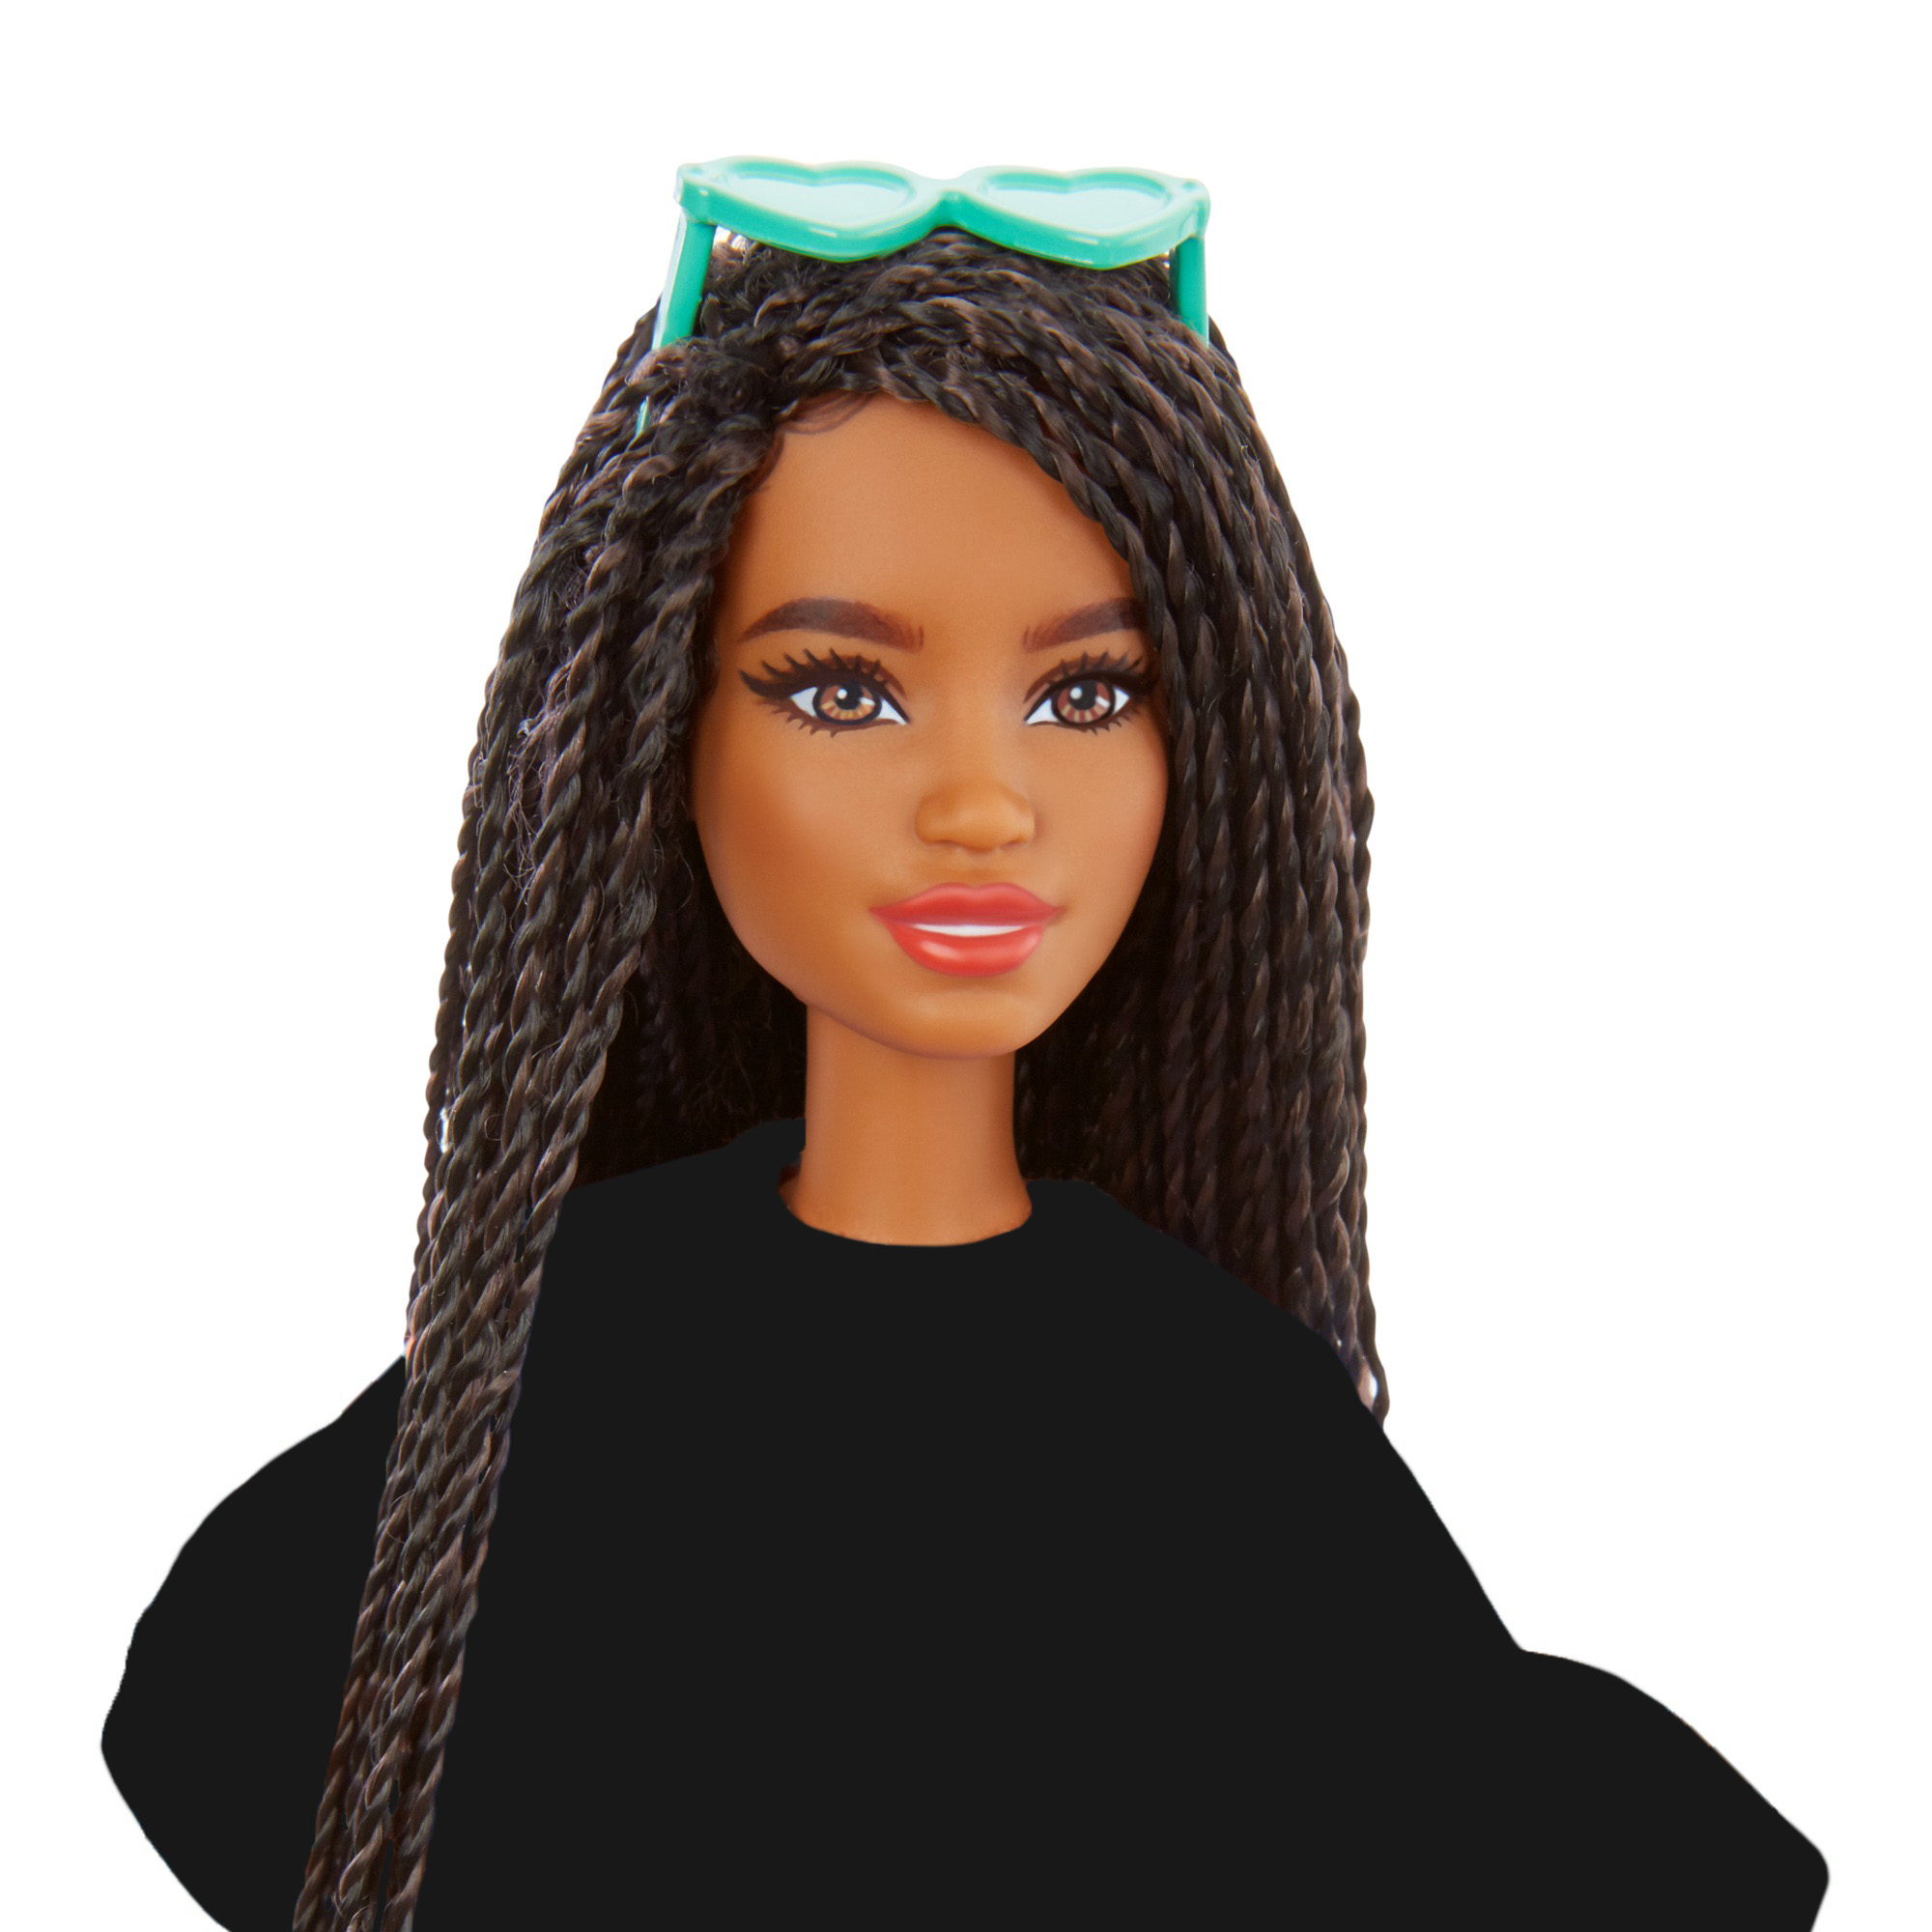 Barbie Styled By You con capelli castani con treccine - Barbie